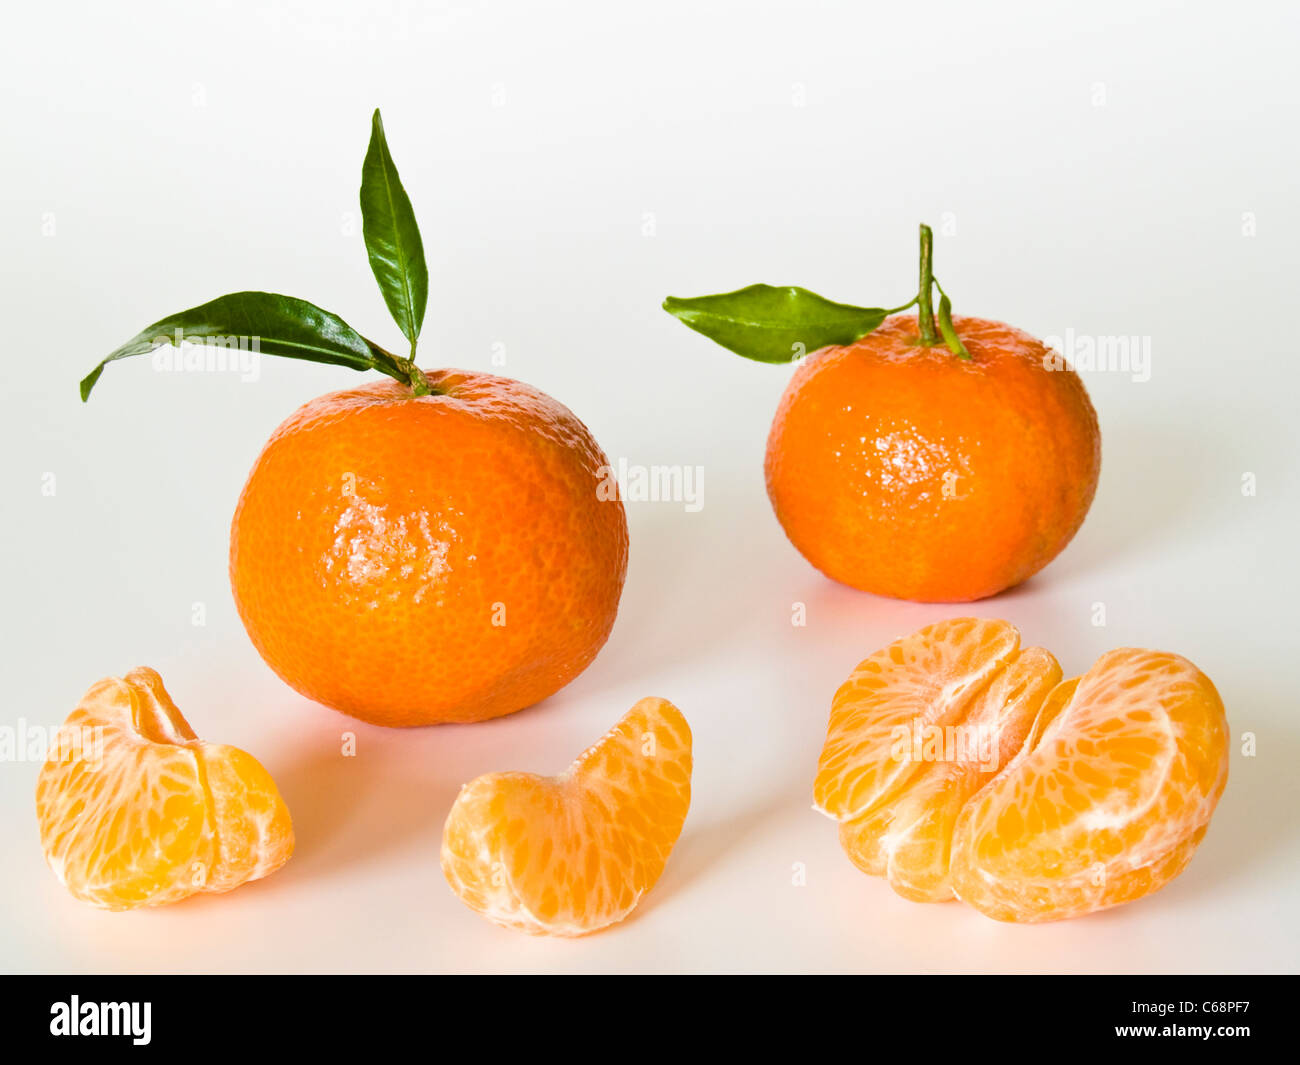 Zwei Clementinen, dabei liegen Fruchtstückchen | two Clementines, beside are pieces of fruit Stock Photo